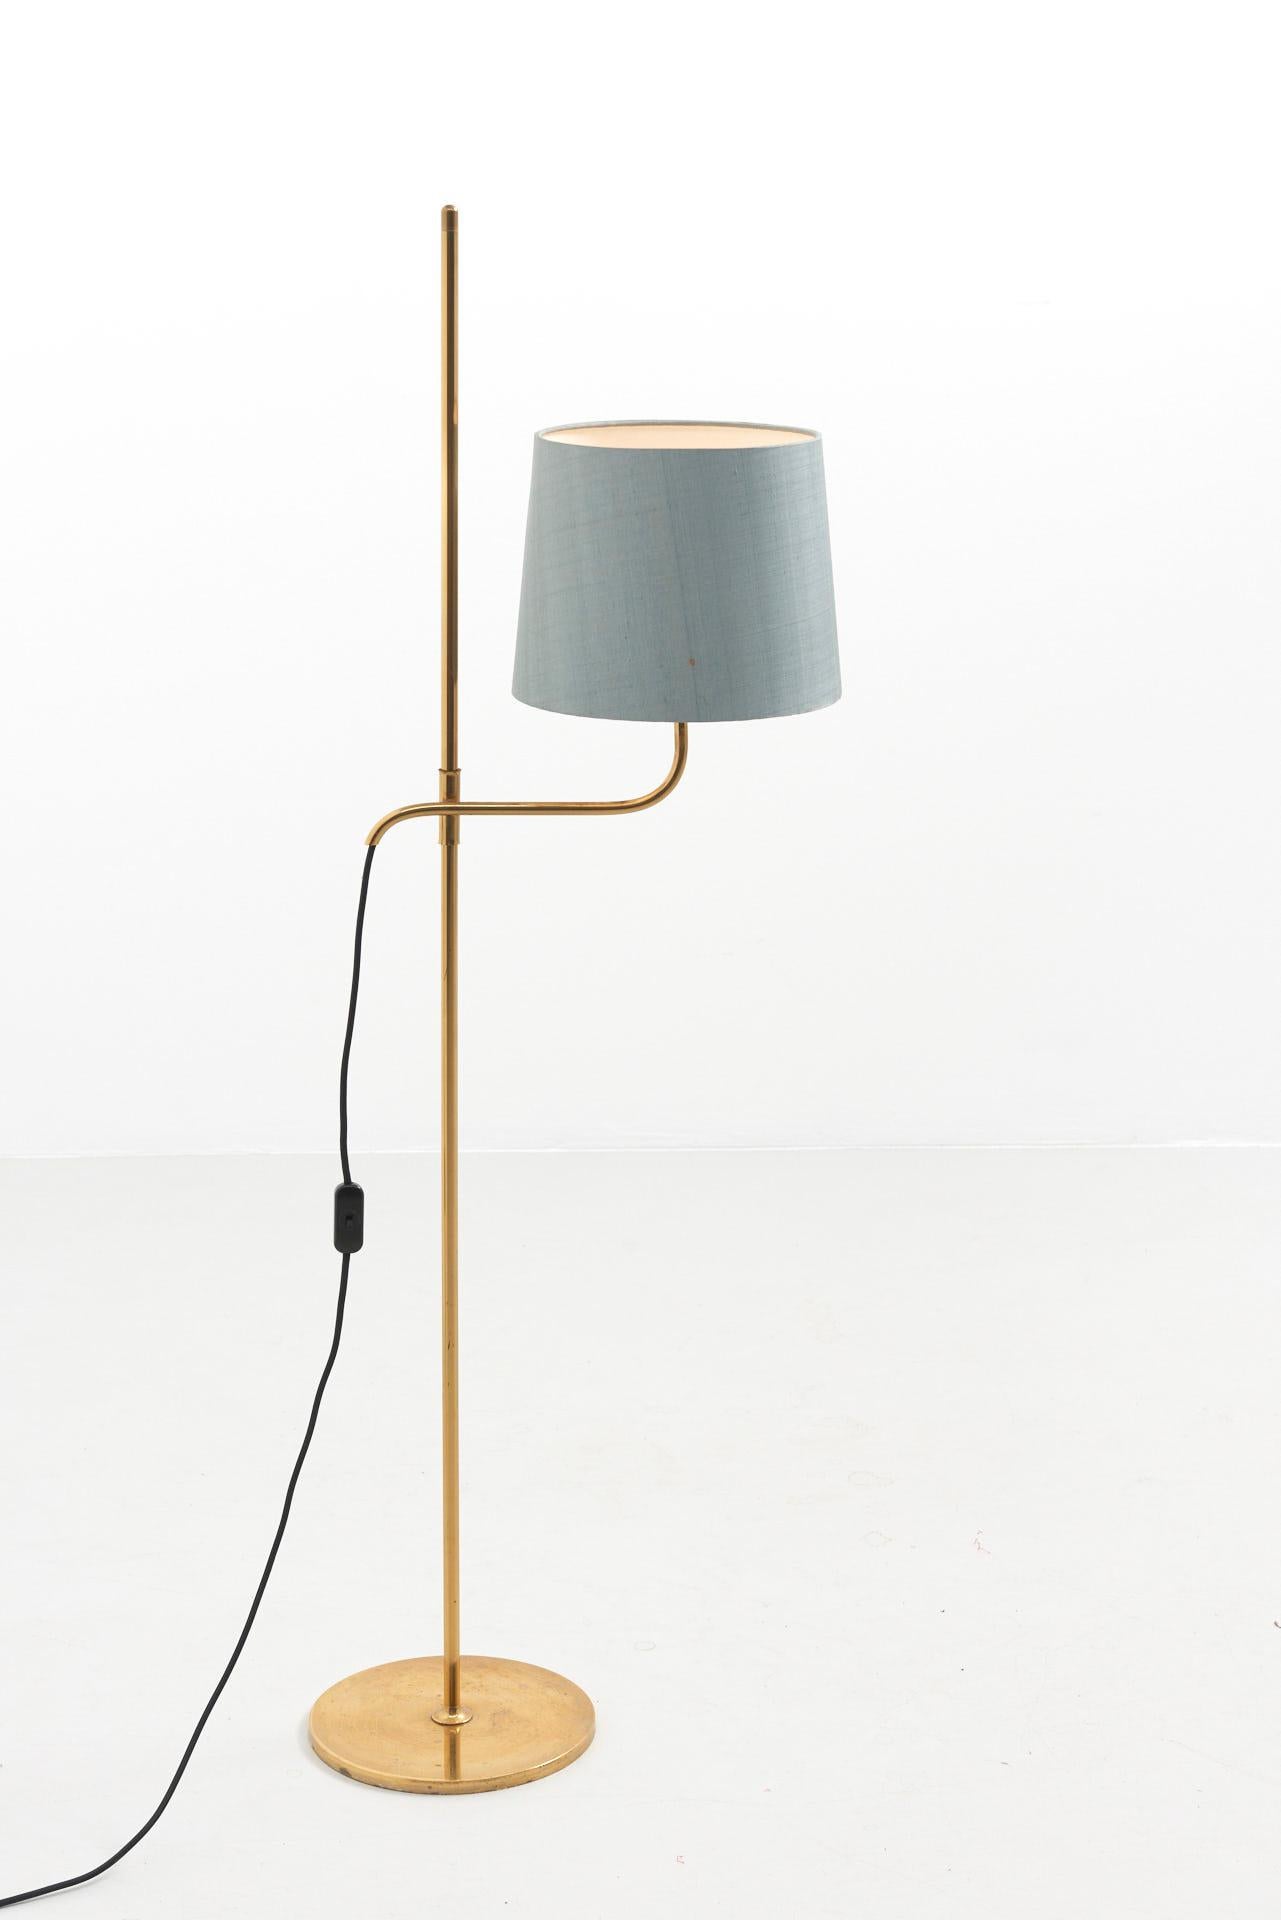 German Adjustable Floor Lamp in Brass, Florian Schulz